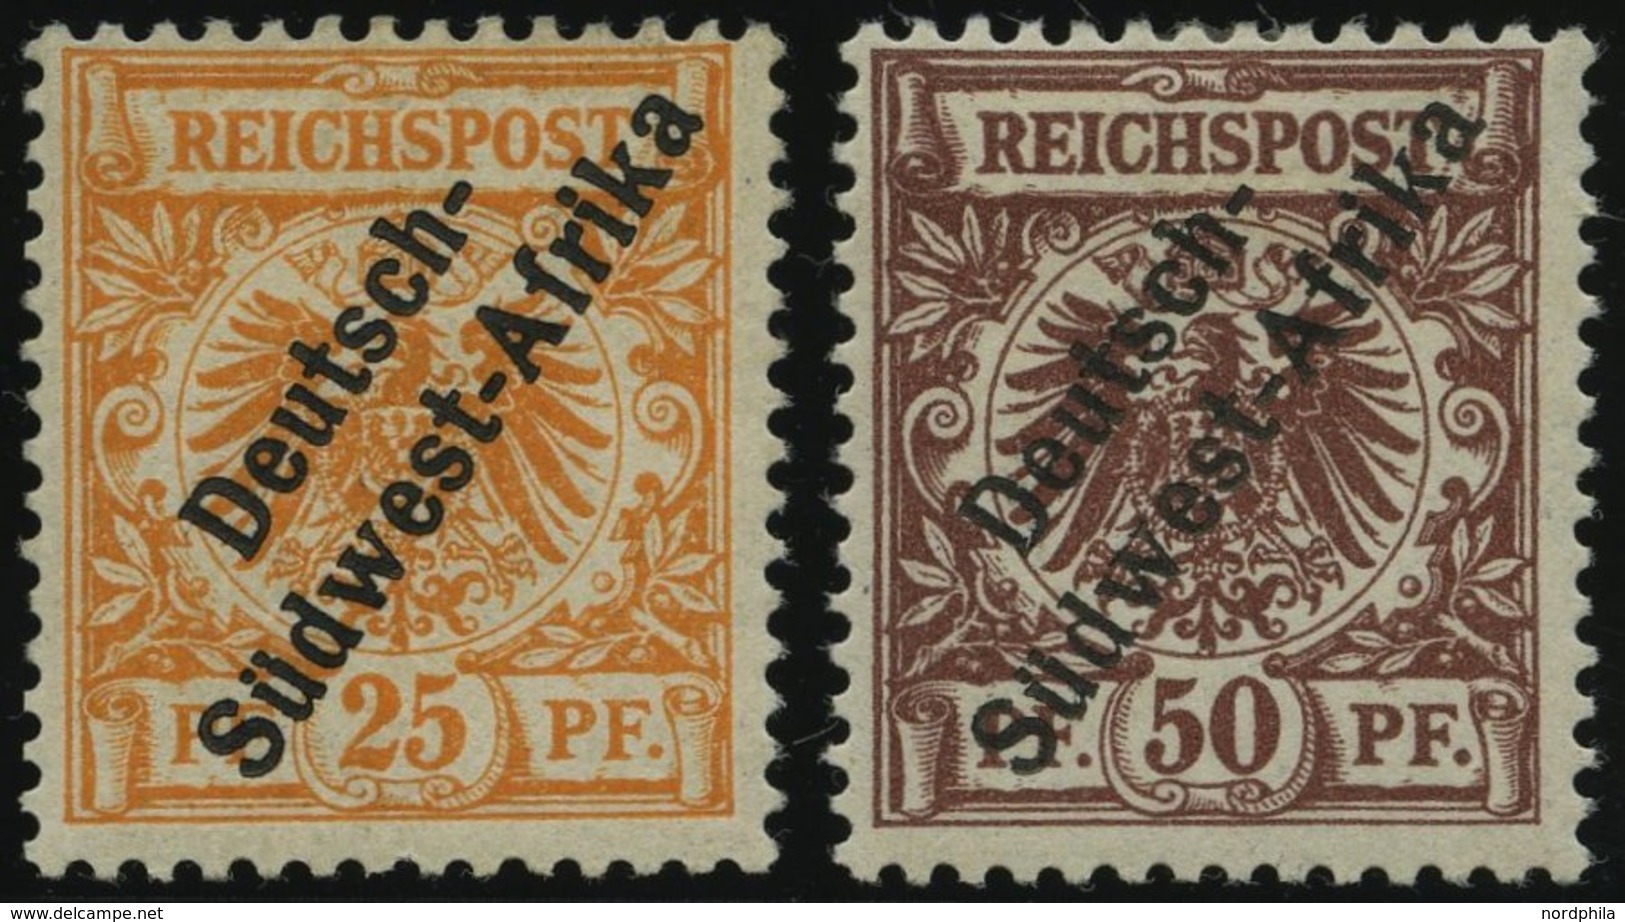 DSWA Ia,II *, 1897, 25 Pf. Gelblichorange Und 50 Pf. Lebhaftrötlichbraun, Falzreste, 2 Prachtwerte, Gepr. W. Engel, Mi.  - German South West Africa